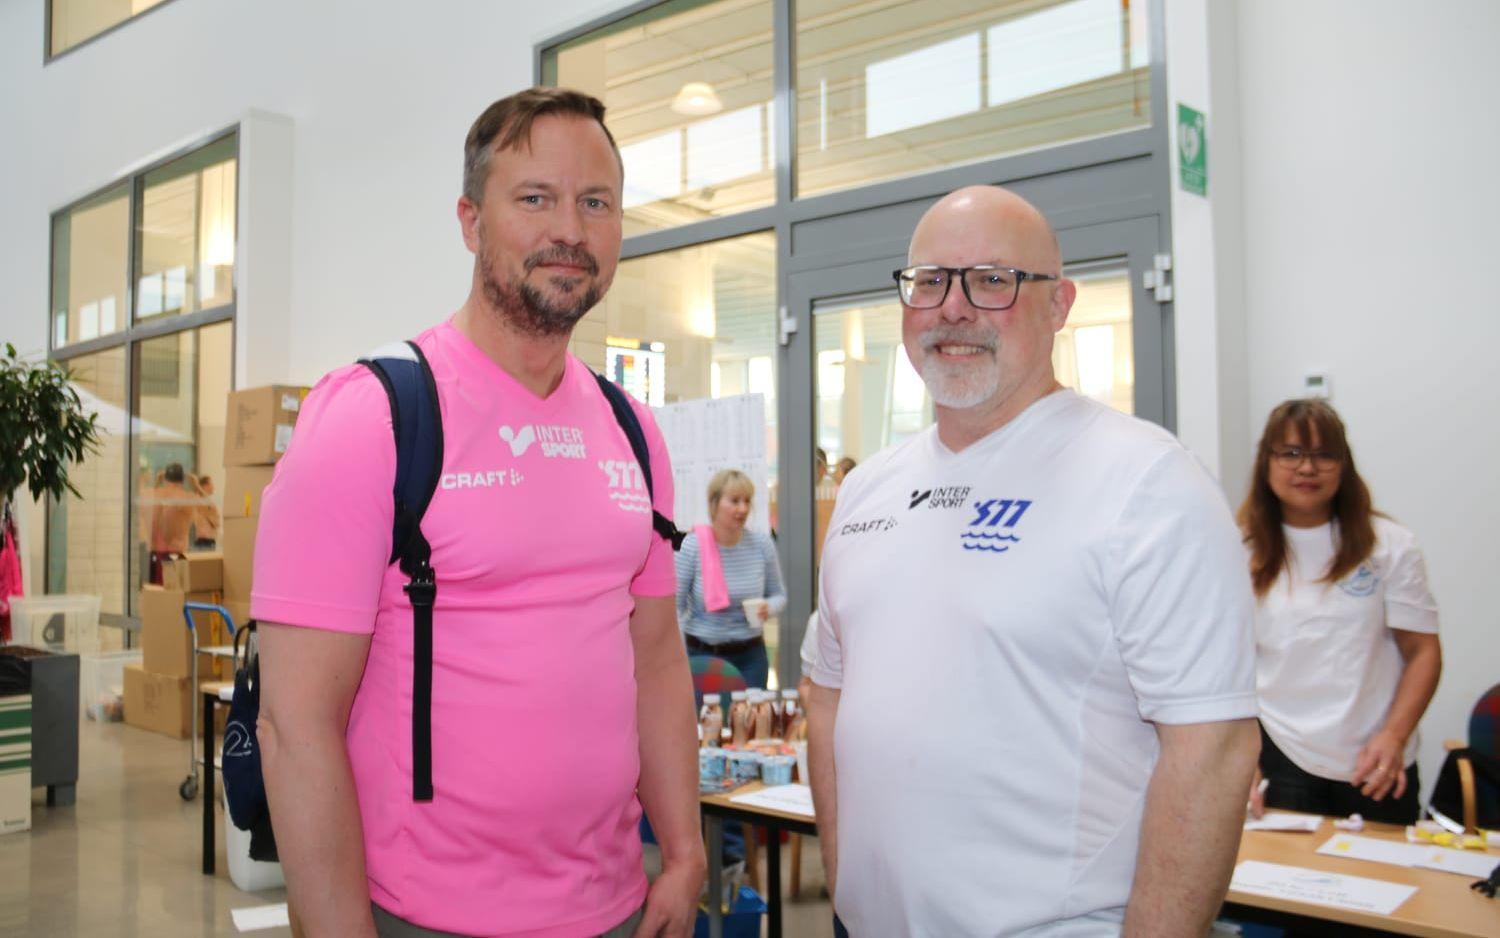 Daniel Gertmo och Hans Bergman, som tillsammans med Katarina Hallerstedt från simklubben S77 i Stenungsund stått för planeringen av evenemanget, var båda glada över alla positiva tillrop från besökarna som gett det med beröm godkänt. 